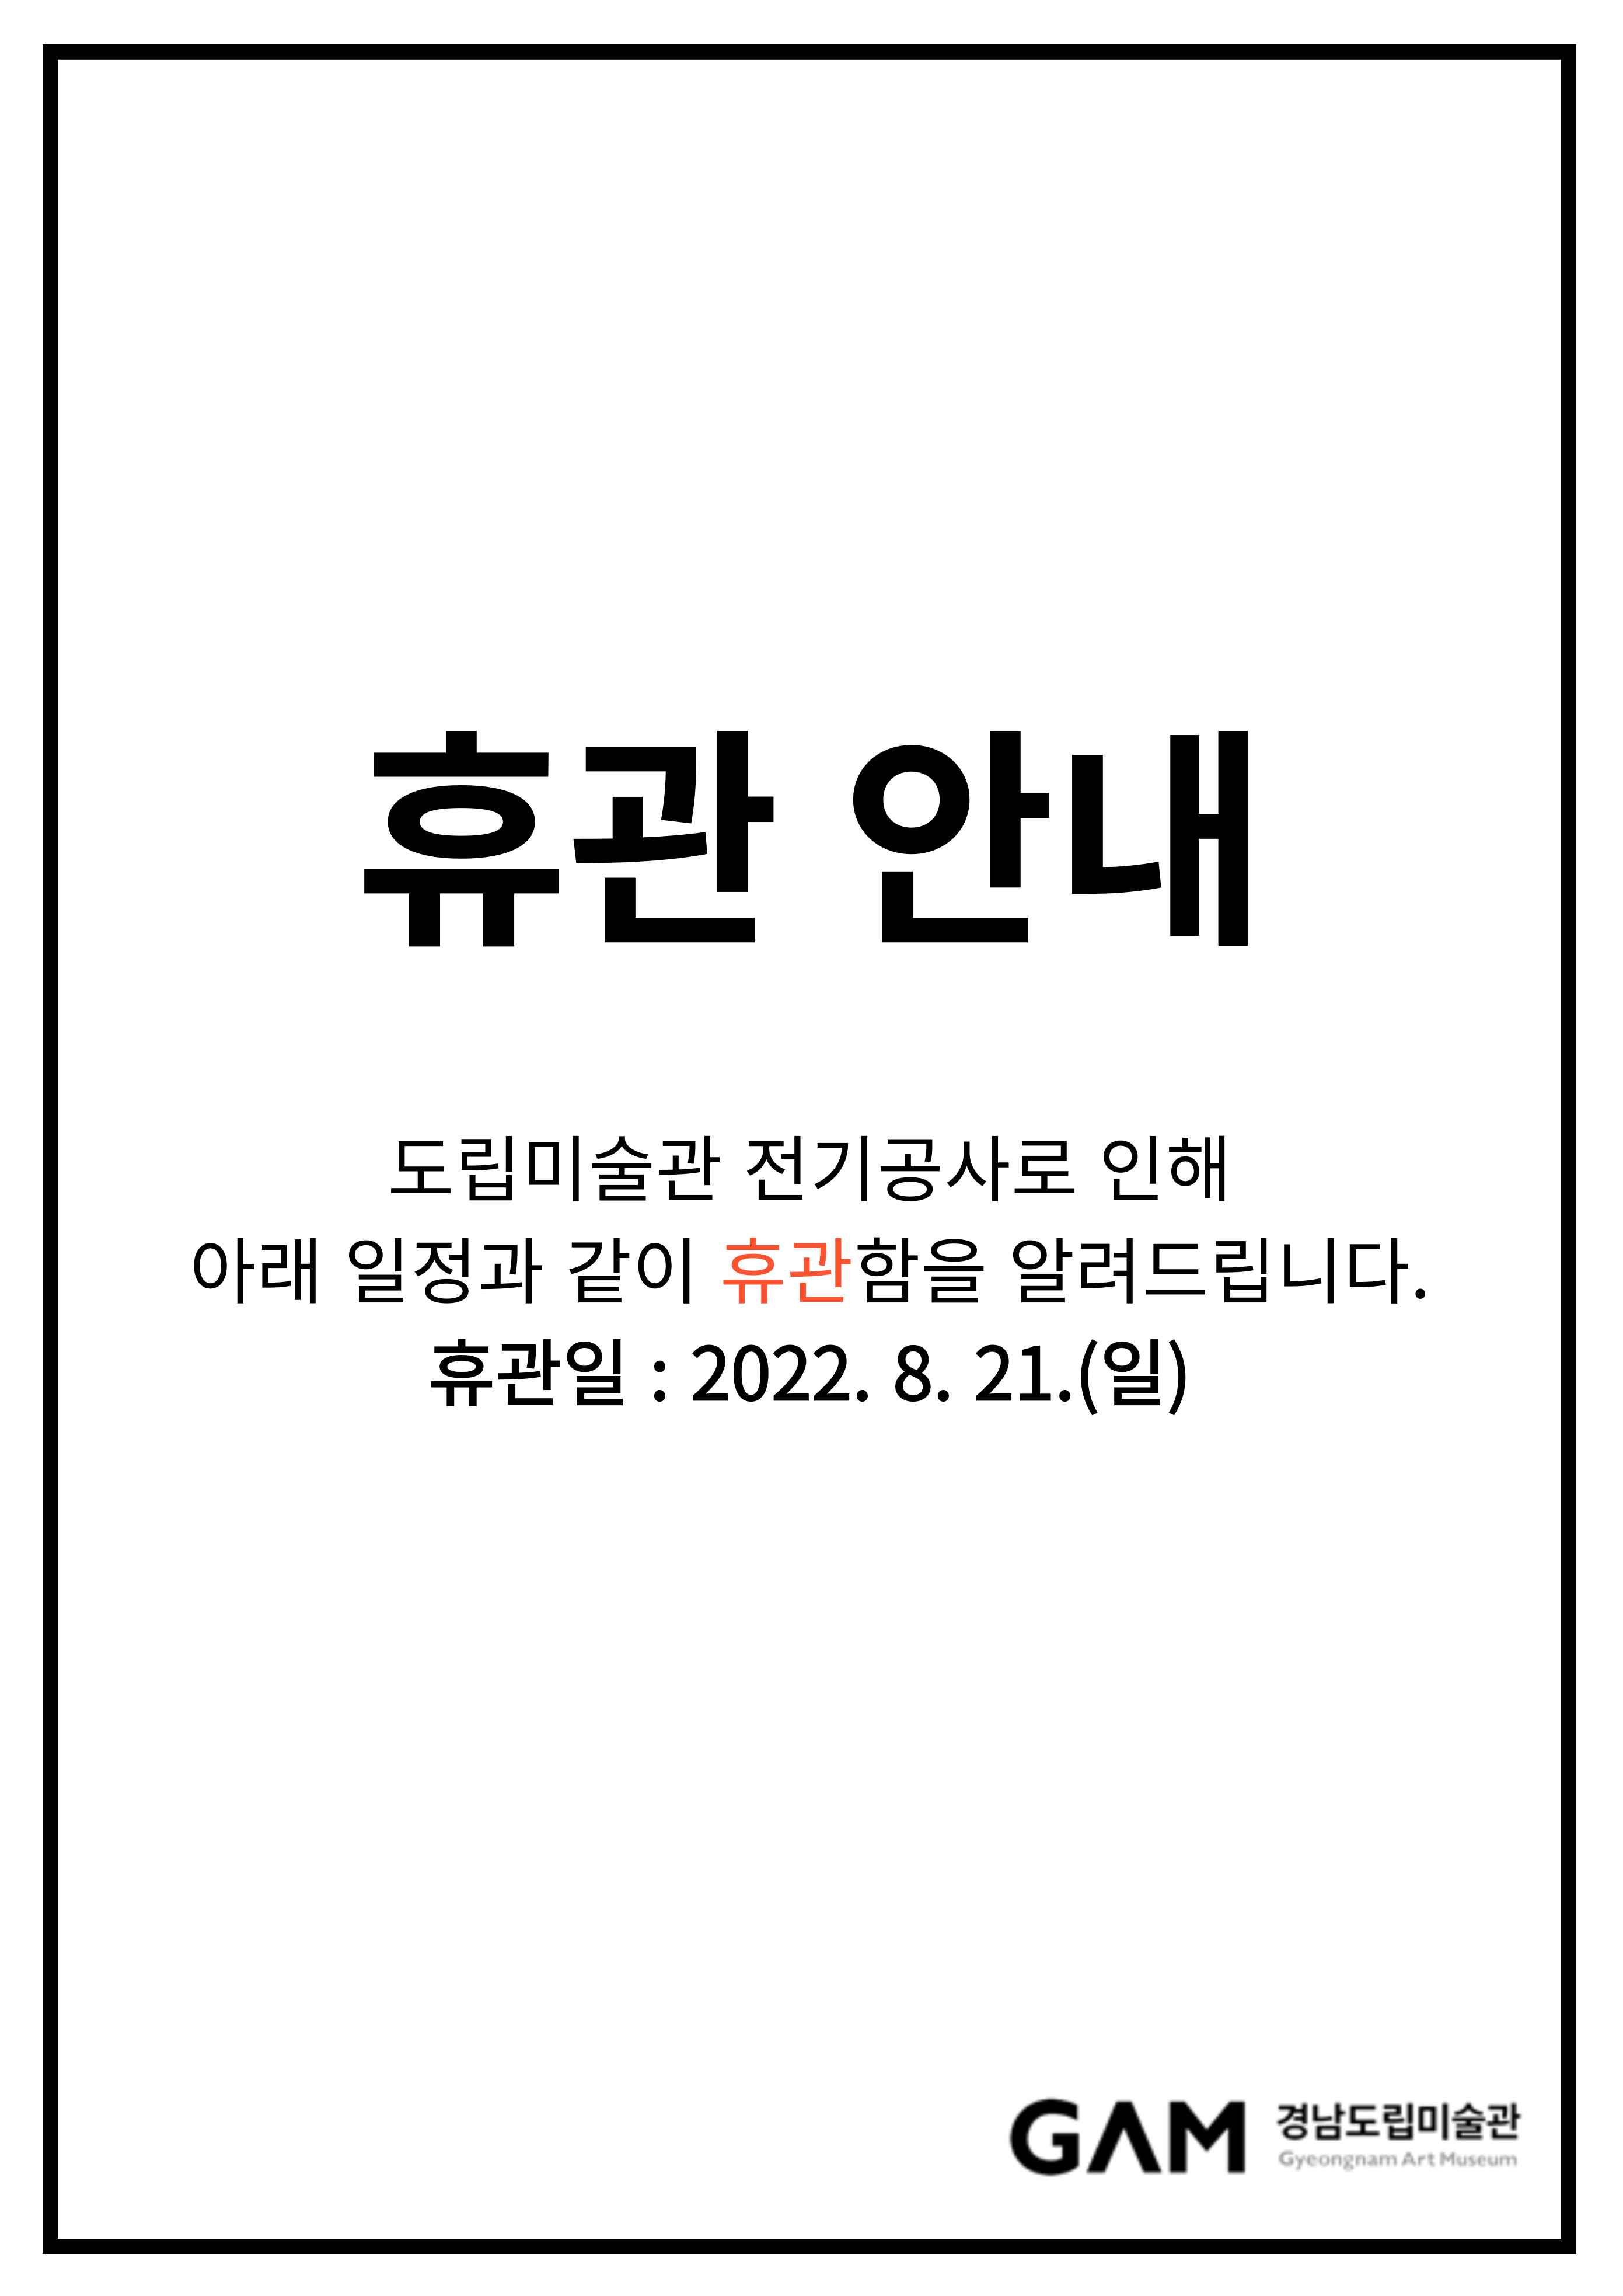 경남도립미술관 휴관 안내(22.8.21.(일))